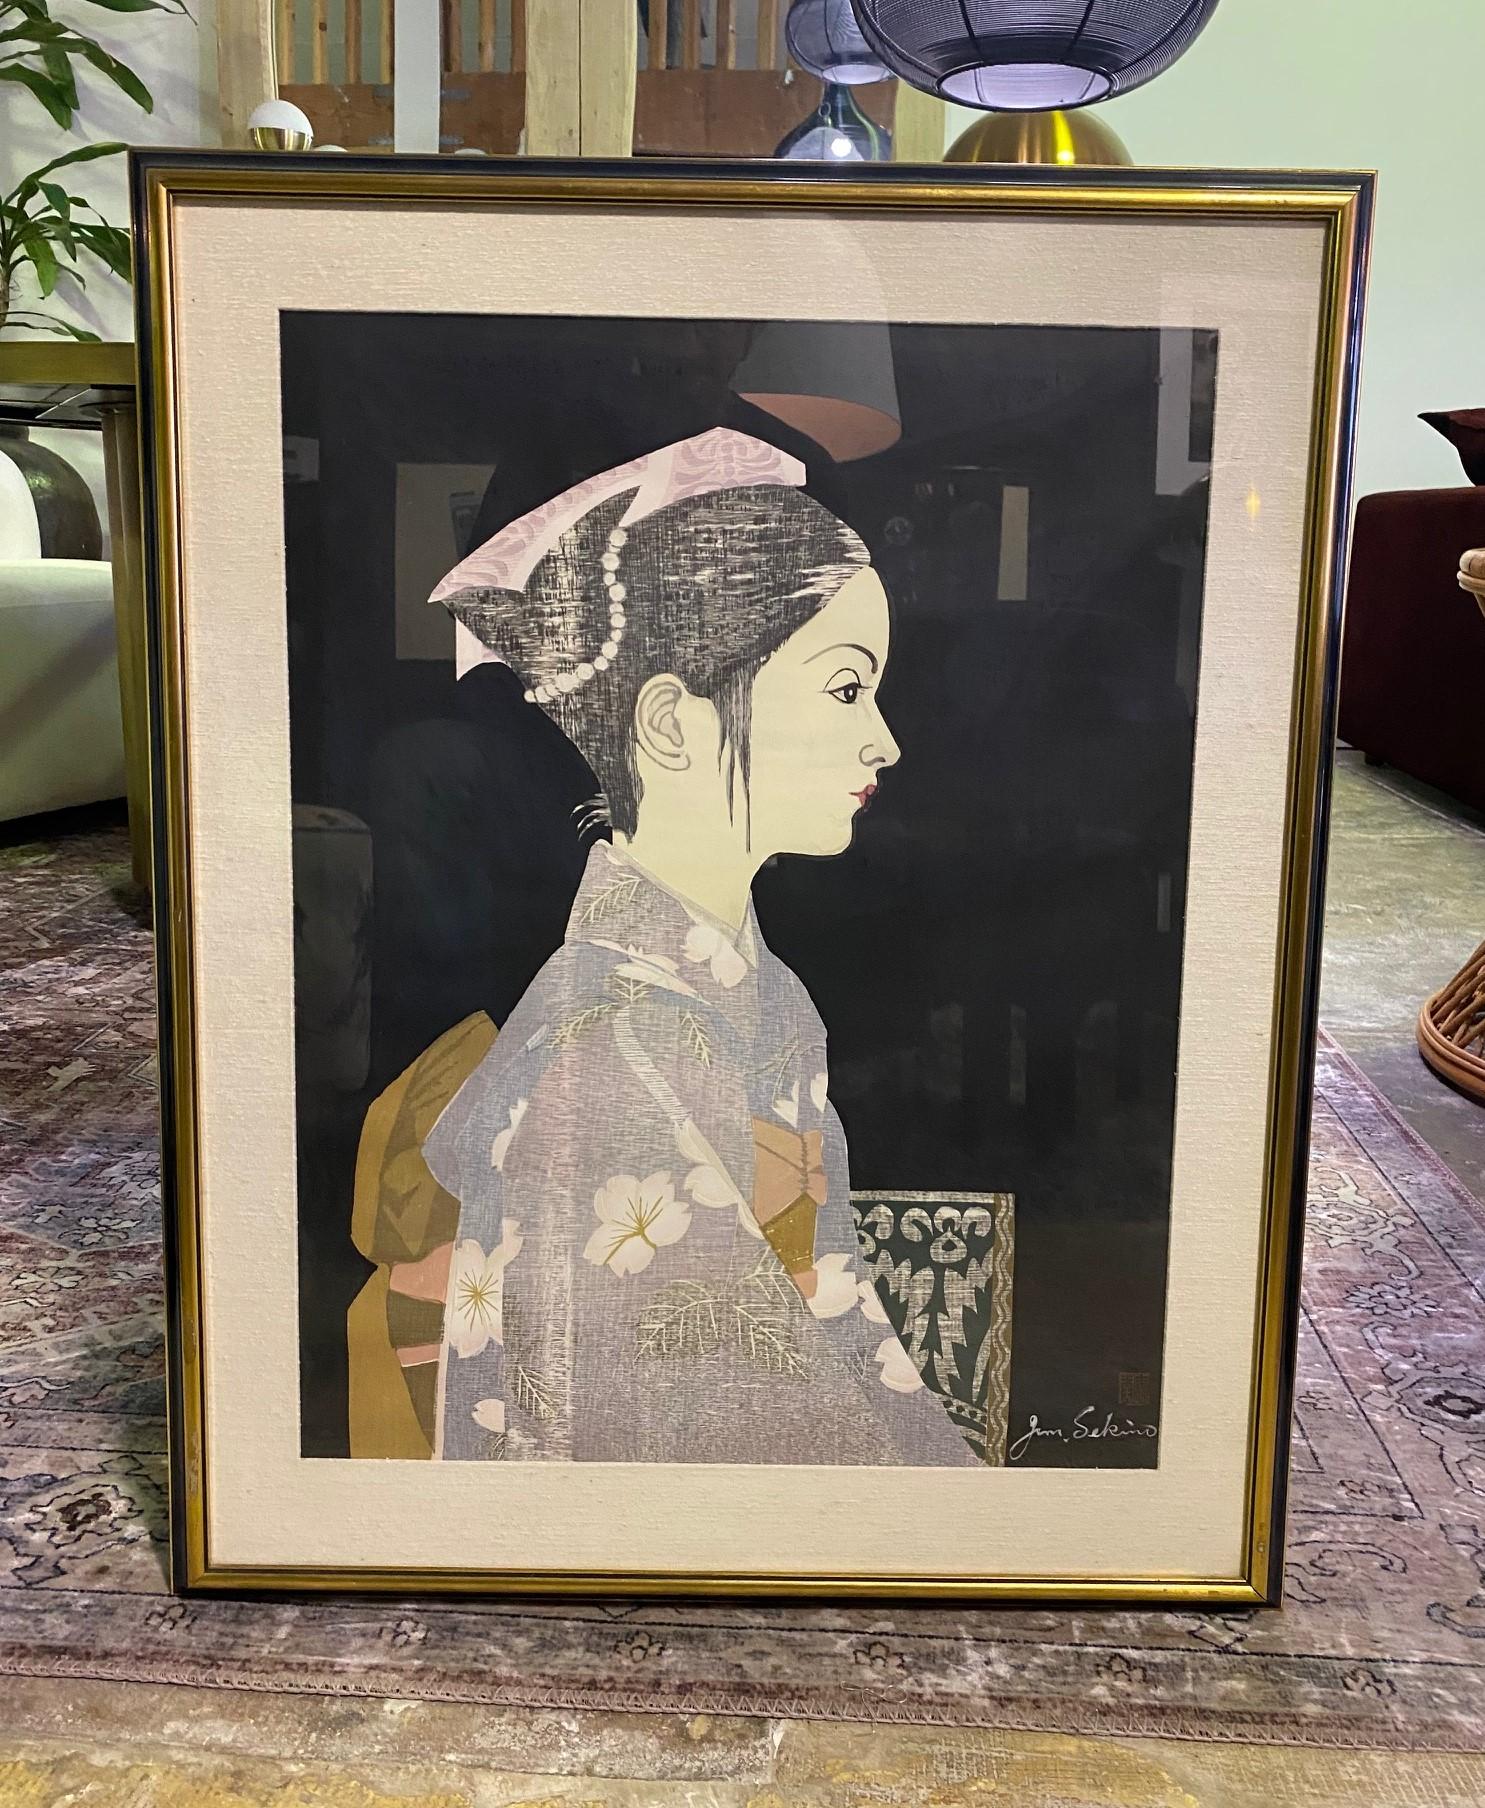 Ein wunderschön komponierter und kolorierter Farbholzschnitt in limitierter Auflage des berühmten japanischen Künstlers Junichiro Sekino

Dieser Druck mit dem Titel 